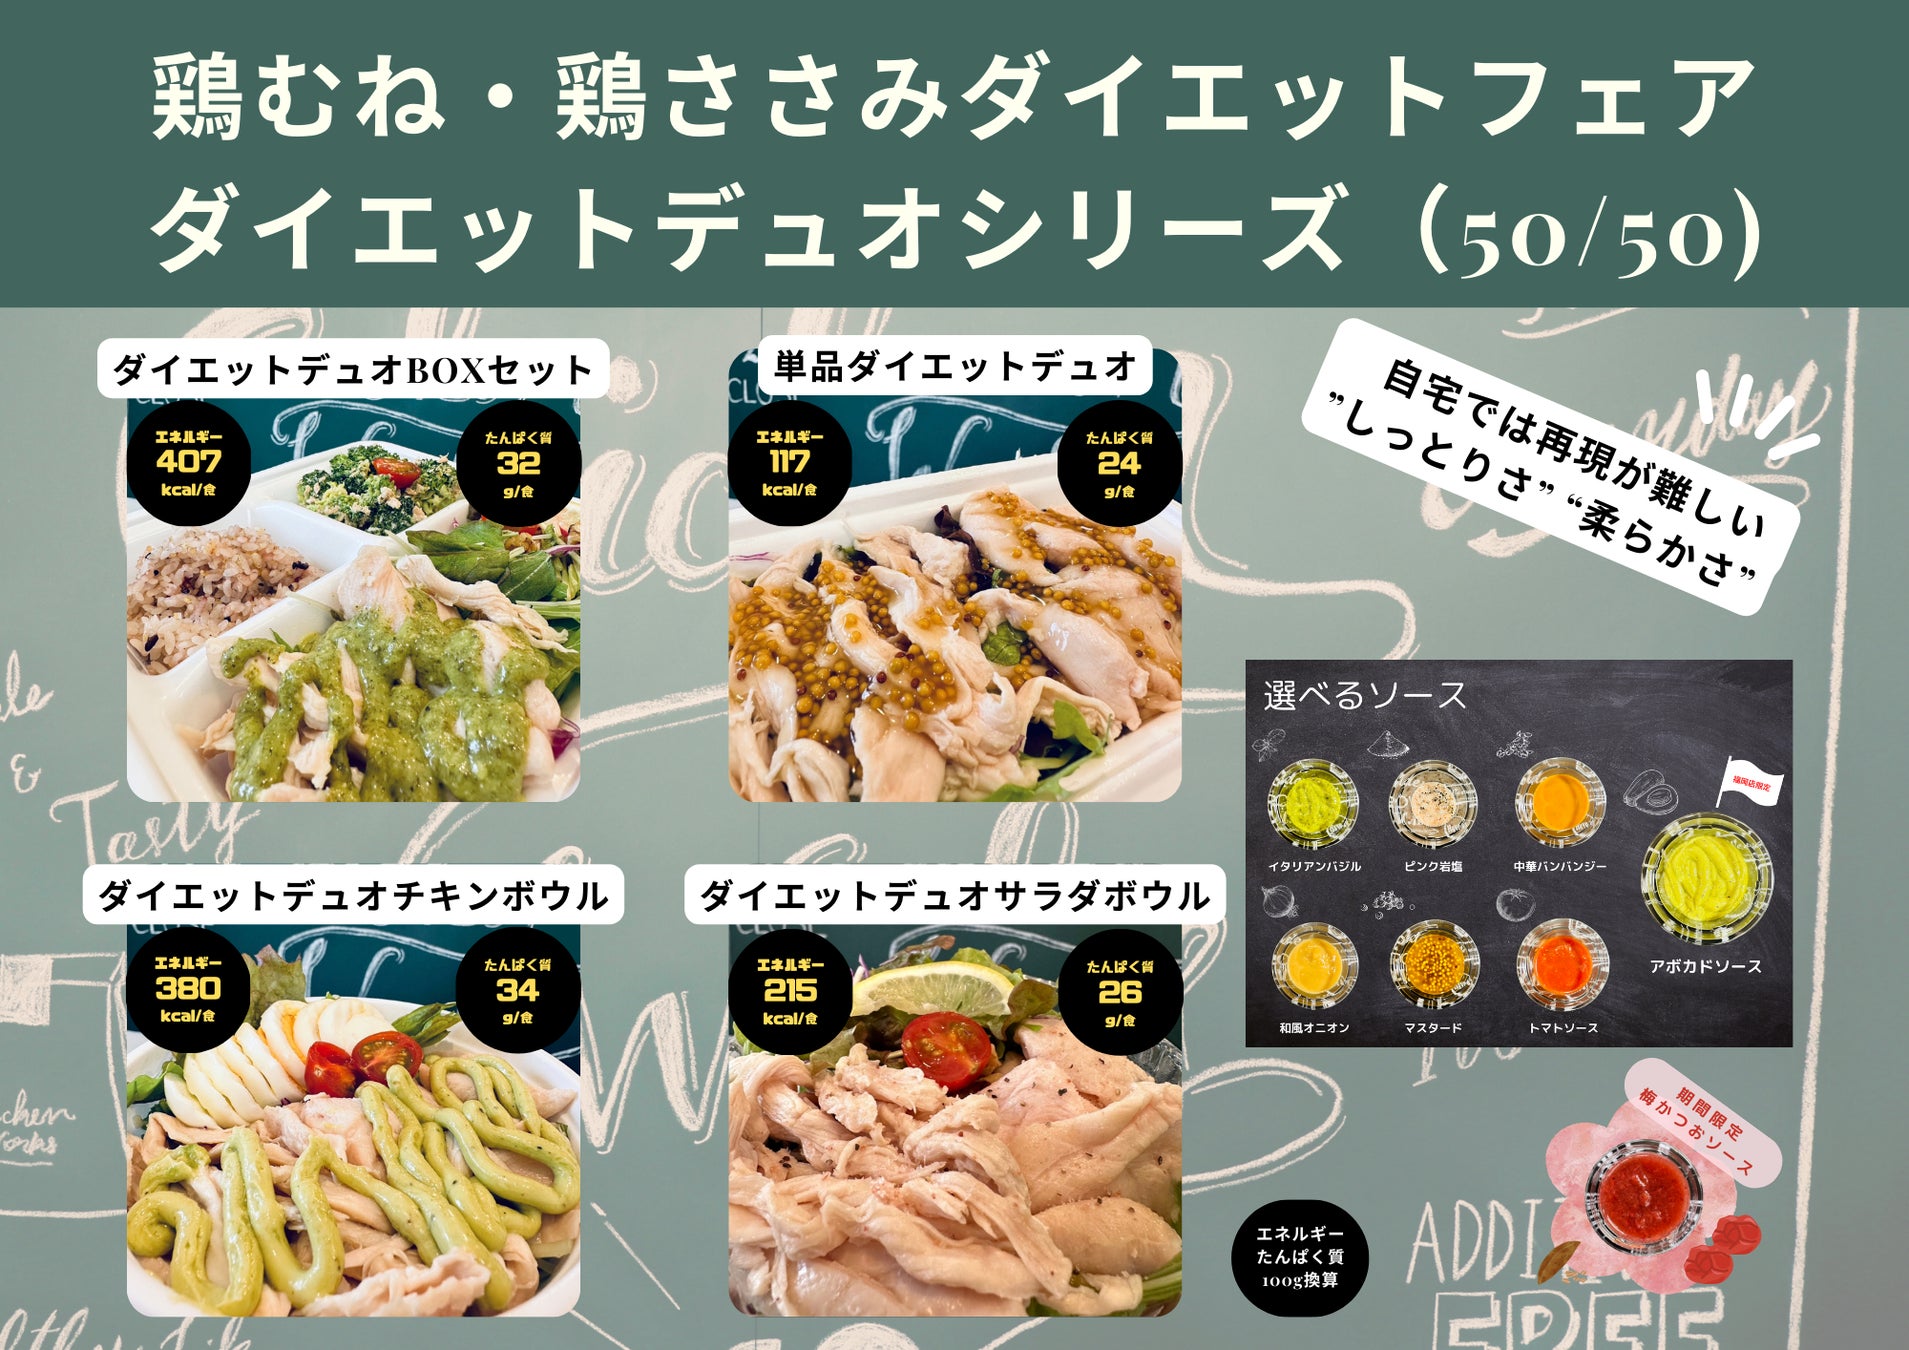 【九州初上陸】チキンワークス白金福岡店が「美味しい食事で健康的にダイエットができる」体験を提供